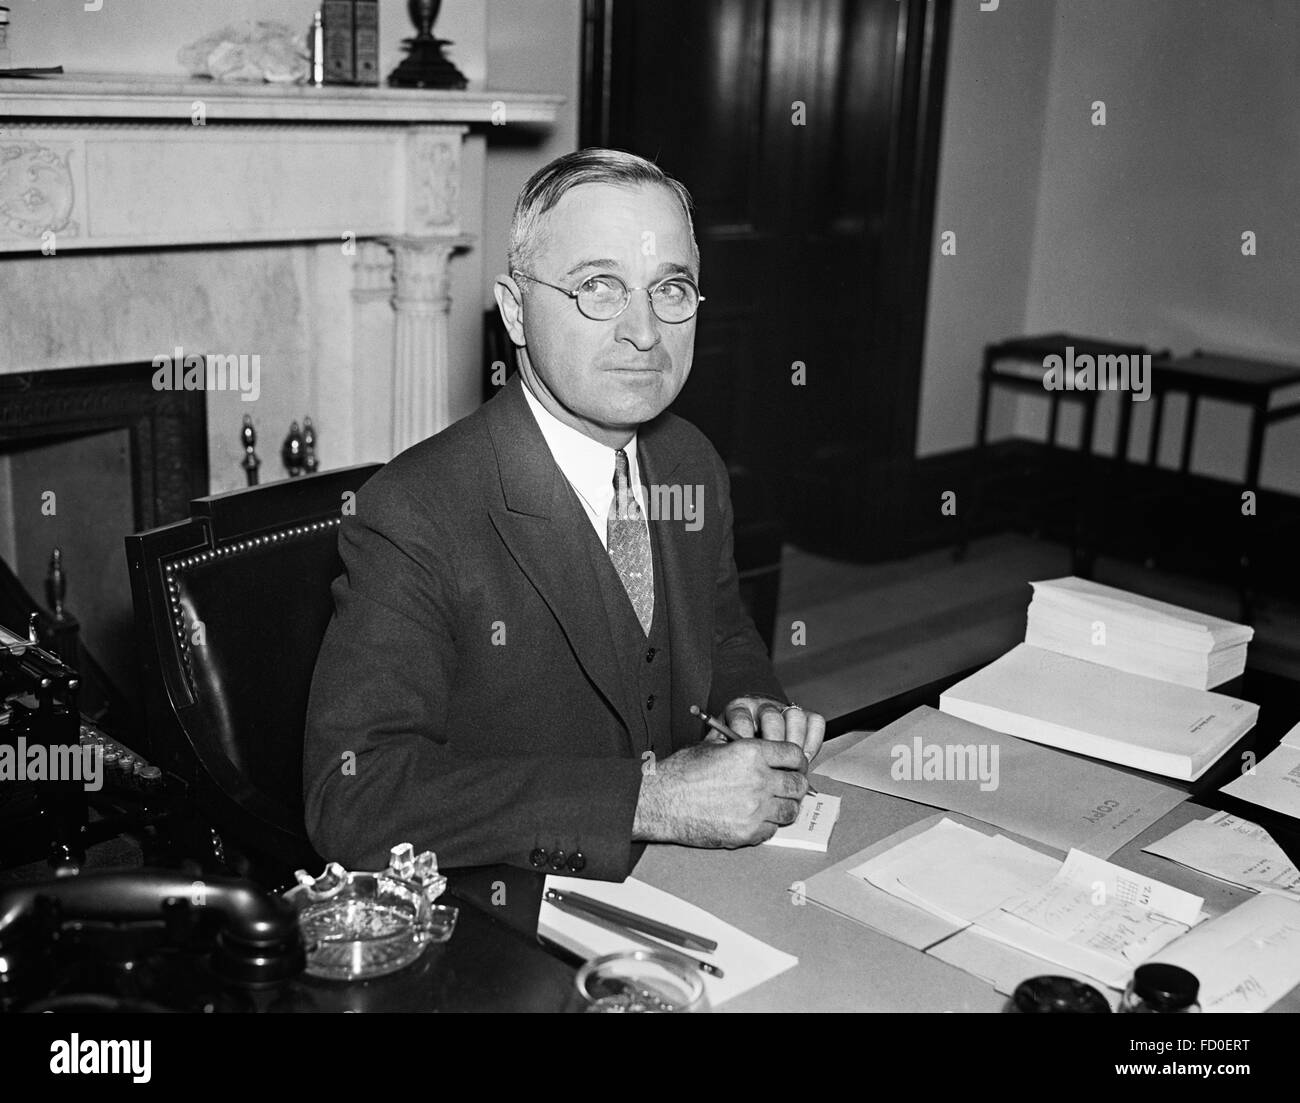 Harry S Truman, portrait du 33e Président des Etats-Unis, c.1934-1935 (alors qu'il était sénateur du Missouri) Banque D'Images